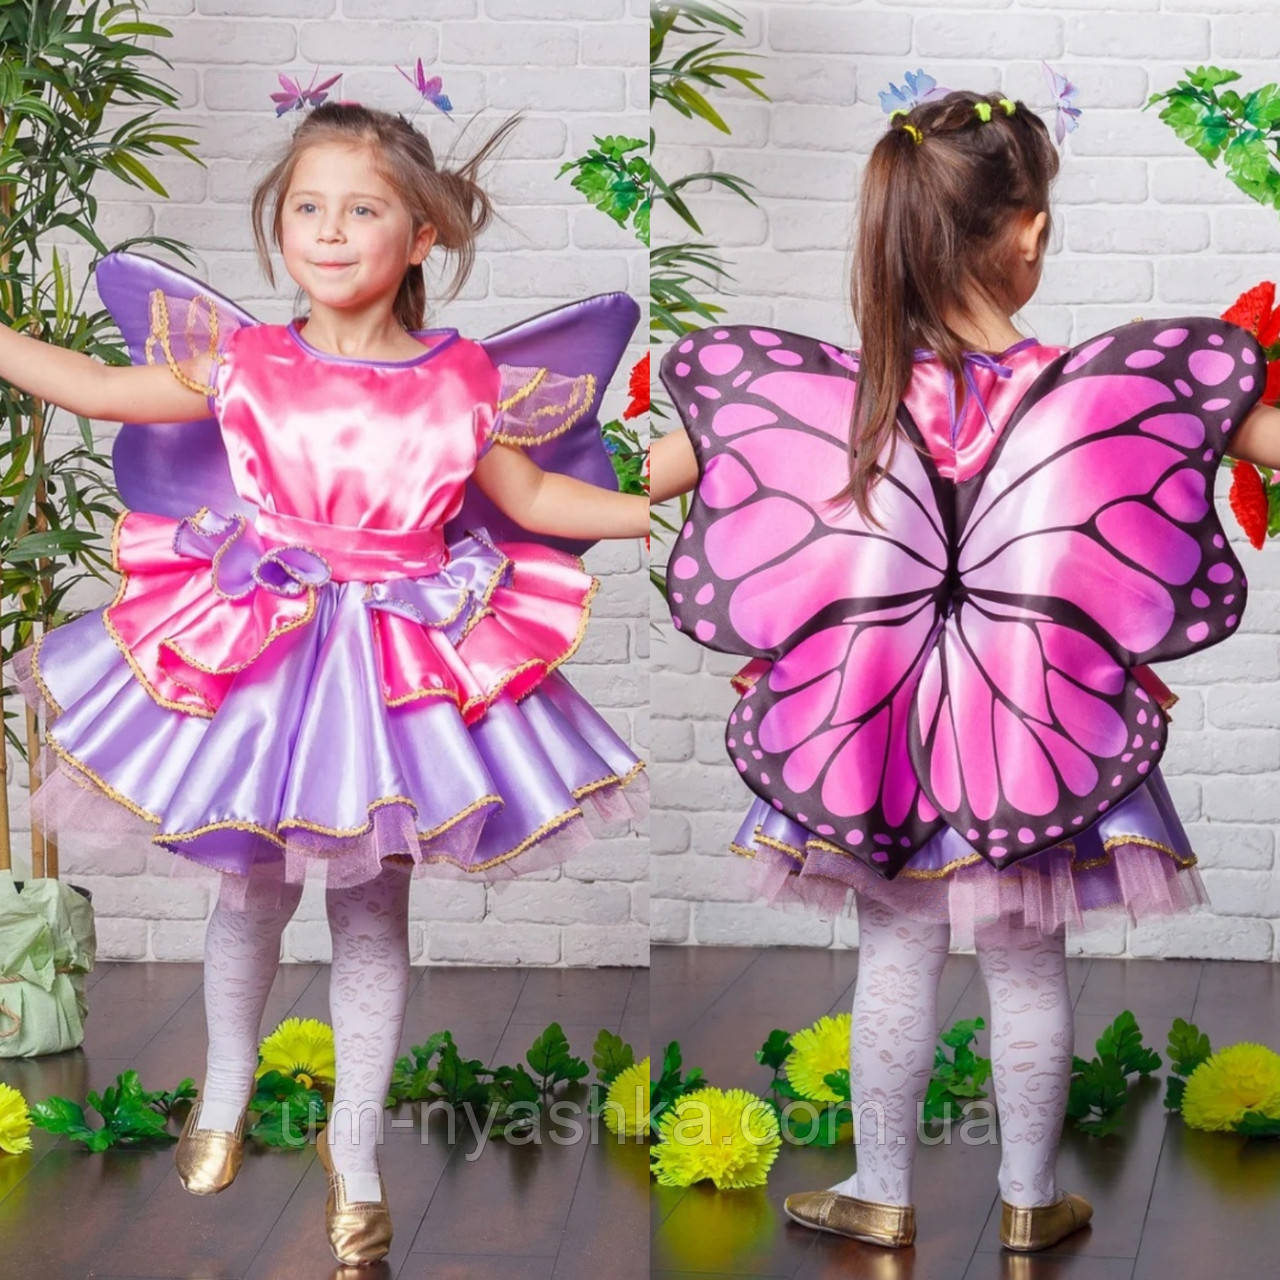 Дитячий карнавальний костюм Метелика, Феї Вінкс